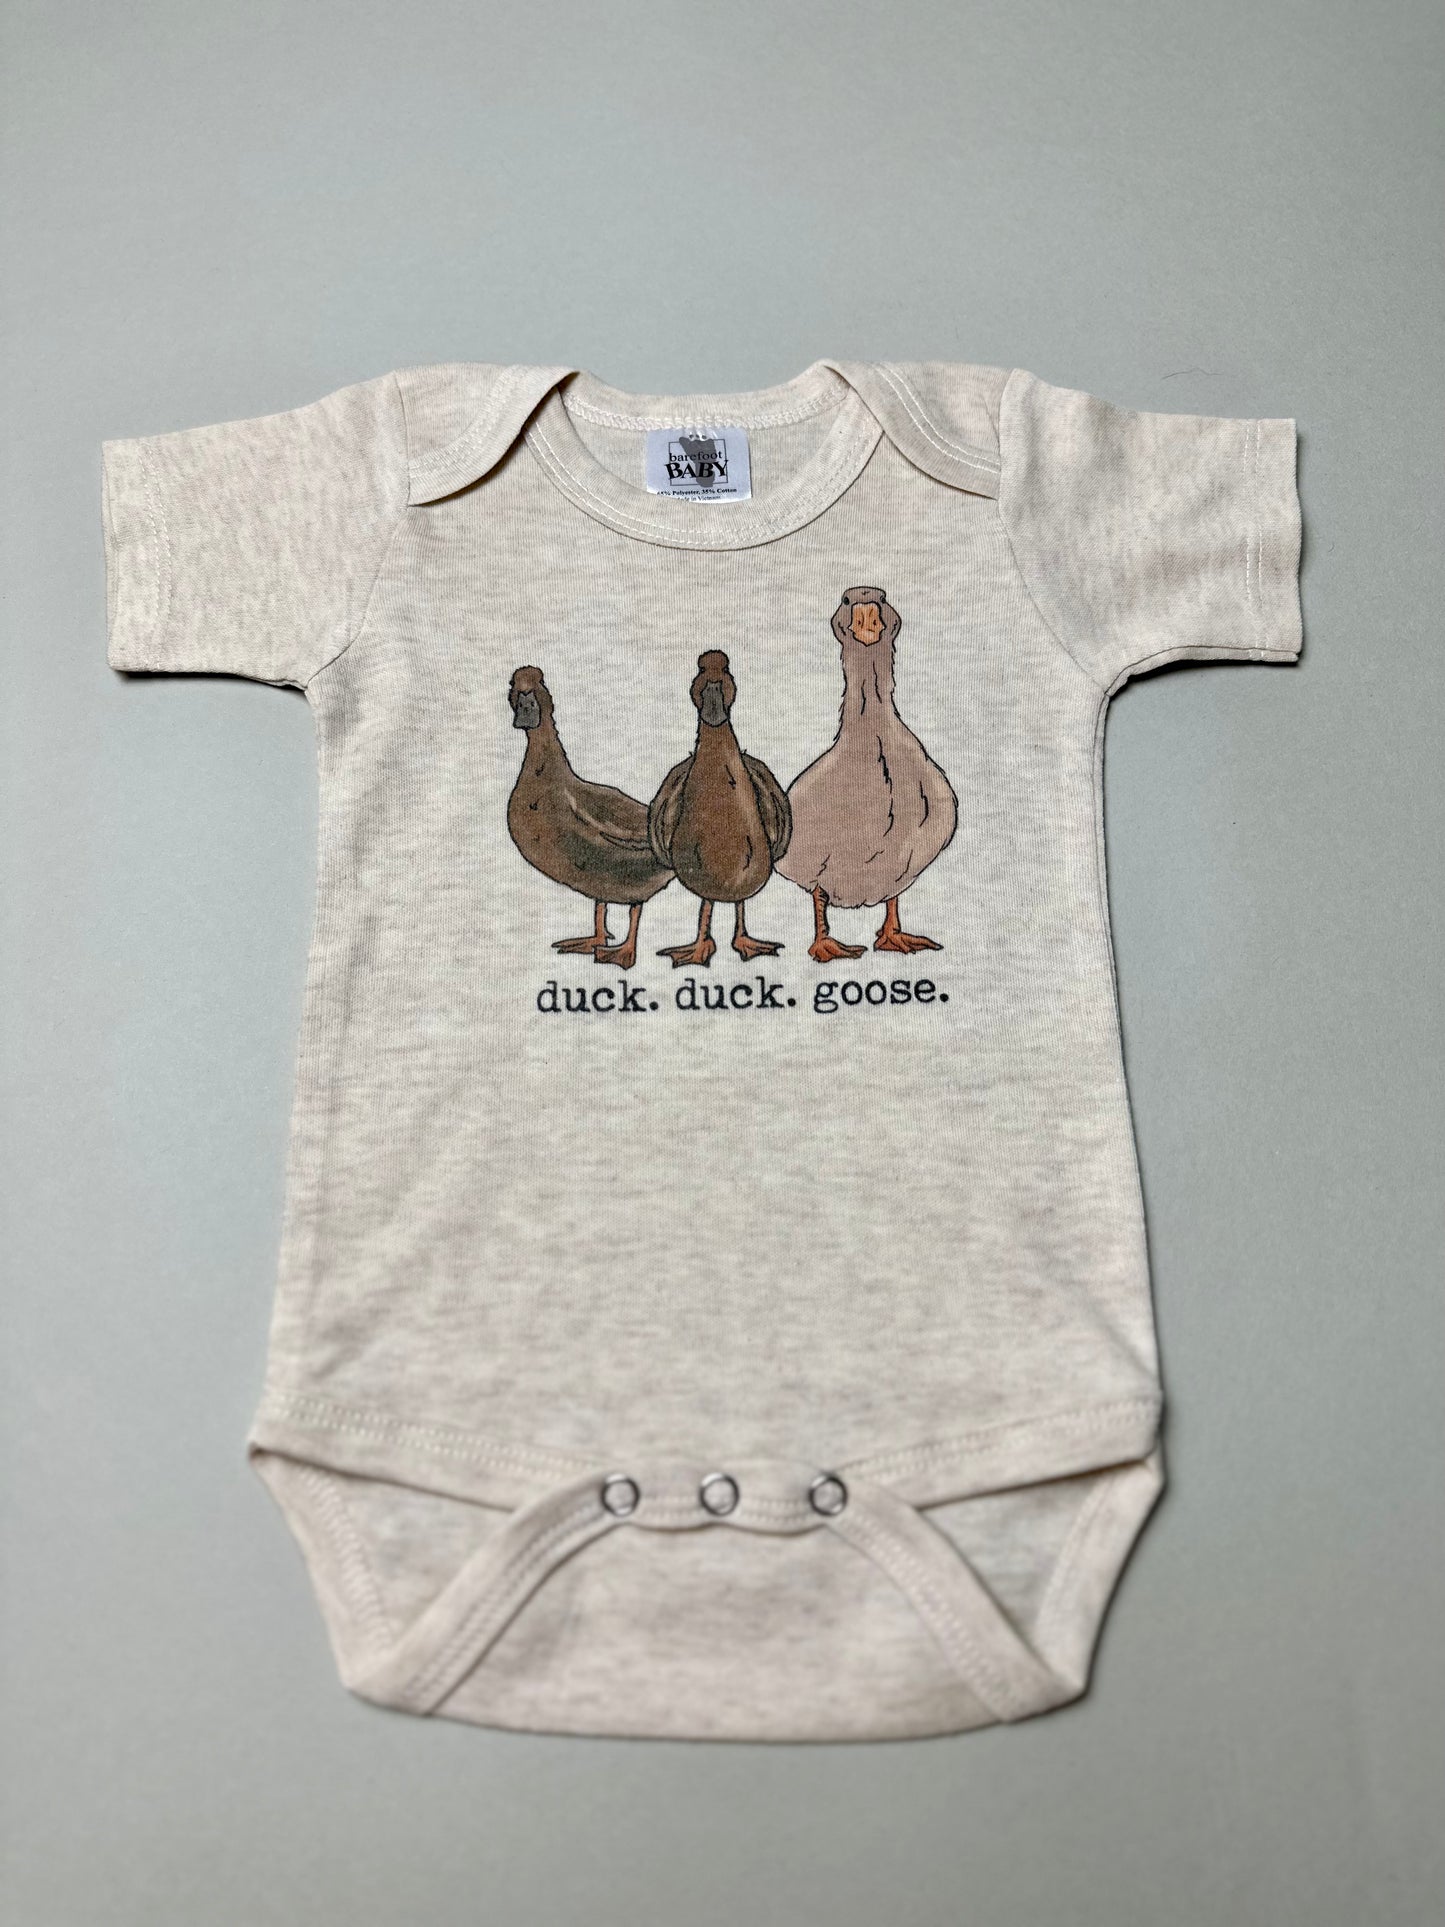 "duck. duck. goose" Baby Body Suit